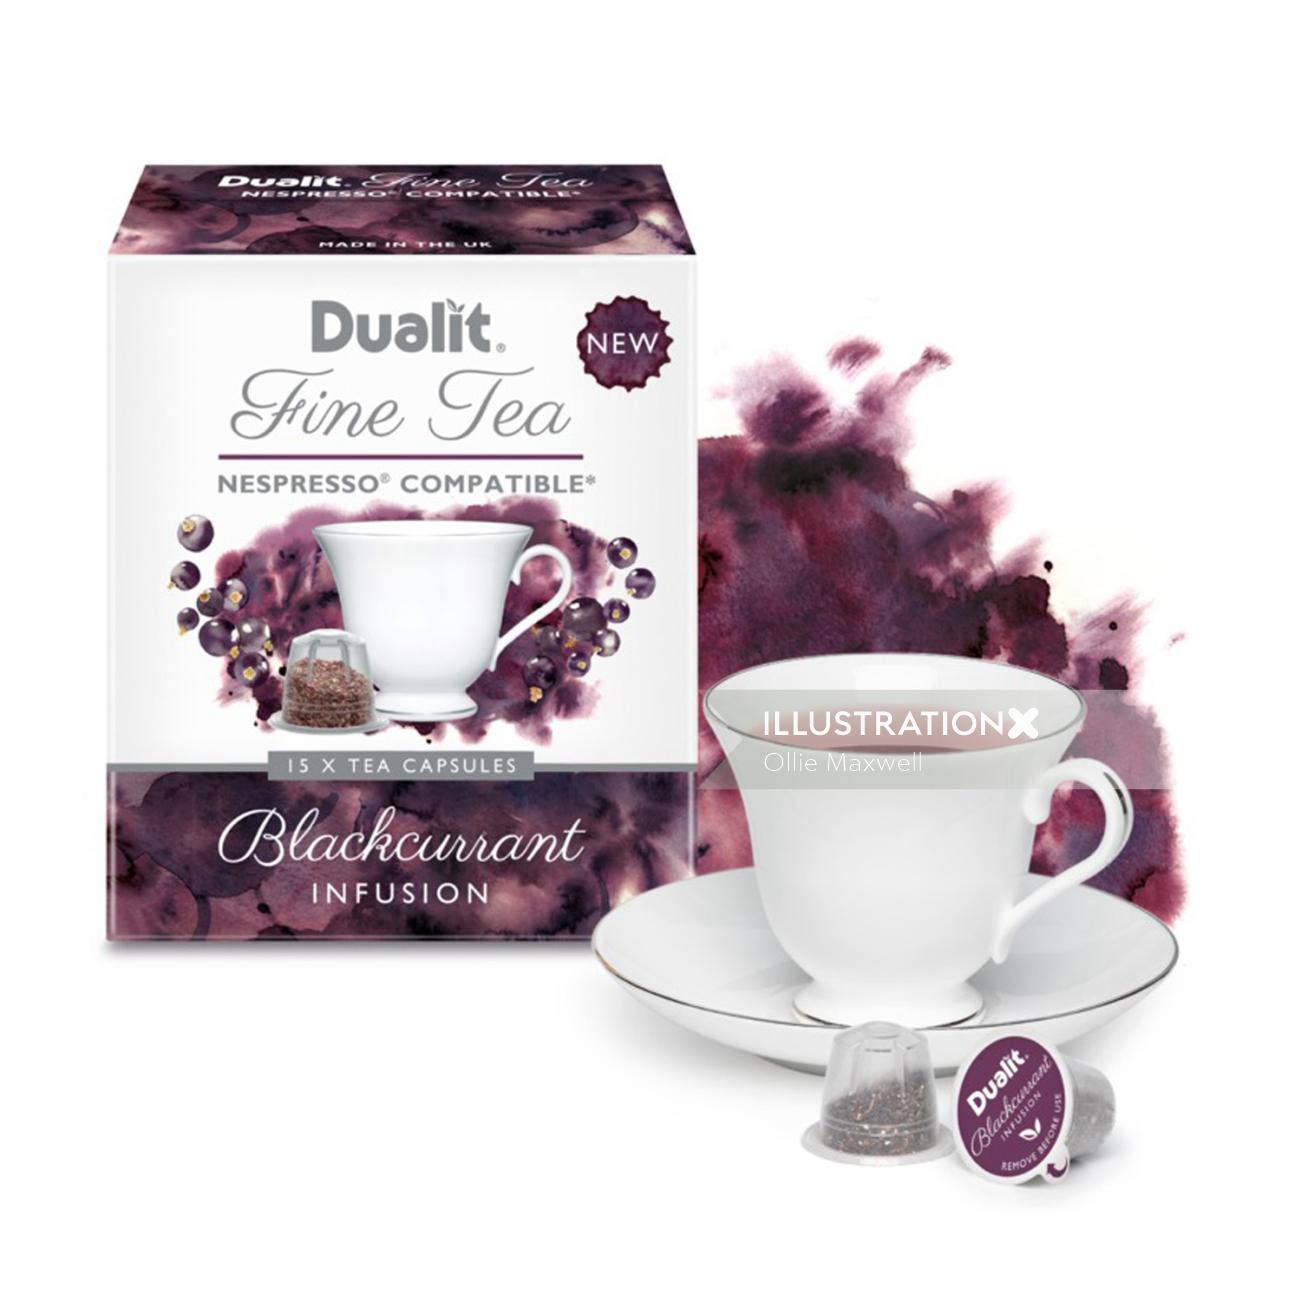 Dualit tea - Food & Drink illustration